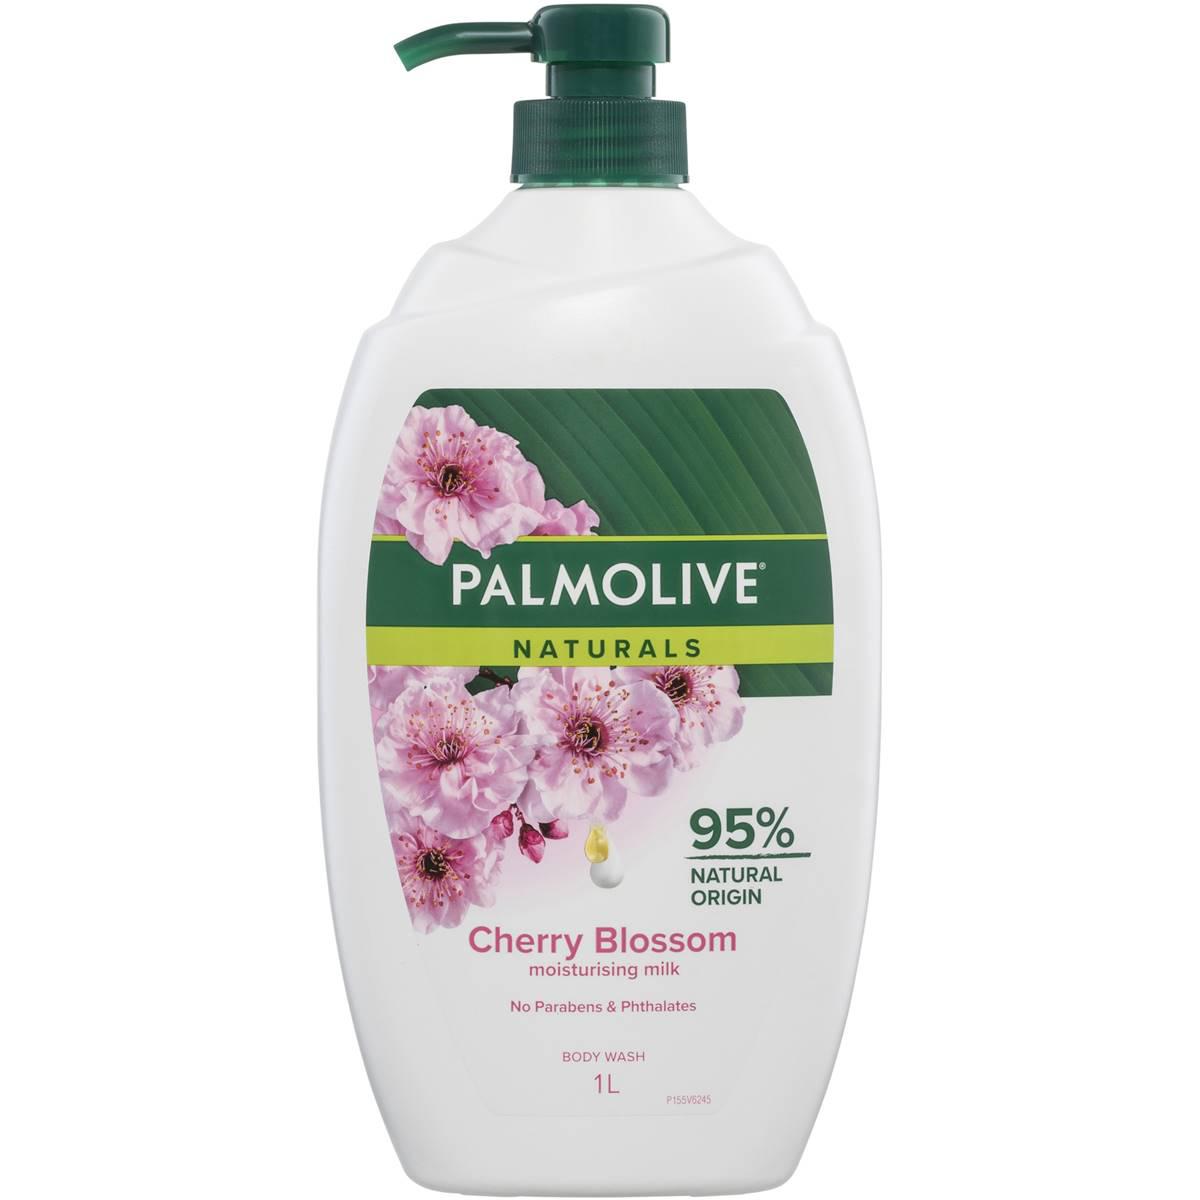 Palmolive Naturals Body Wash Milk & Cherry Blossom Shower Gel 1l